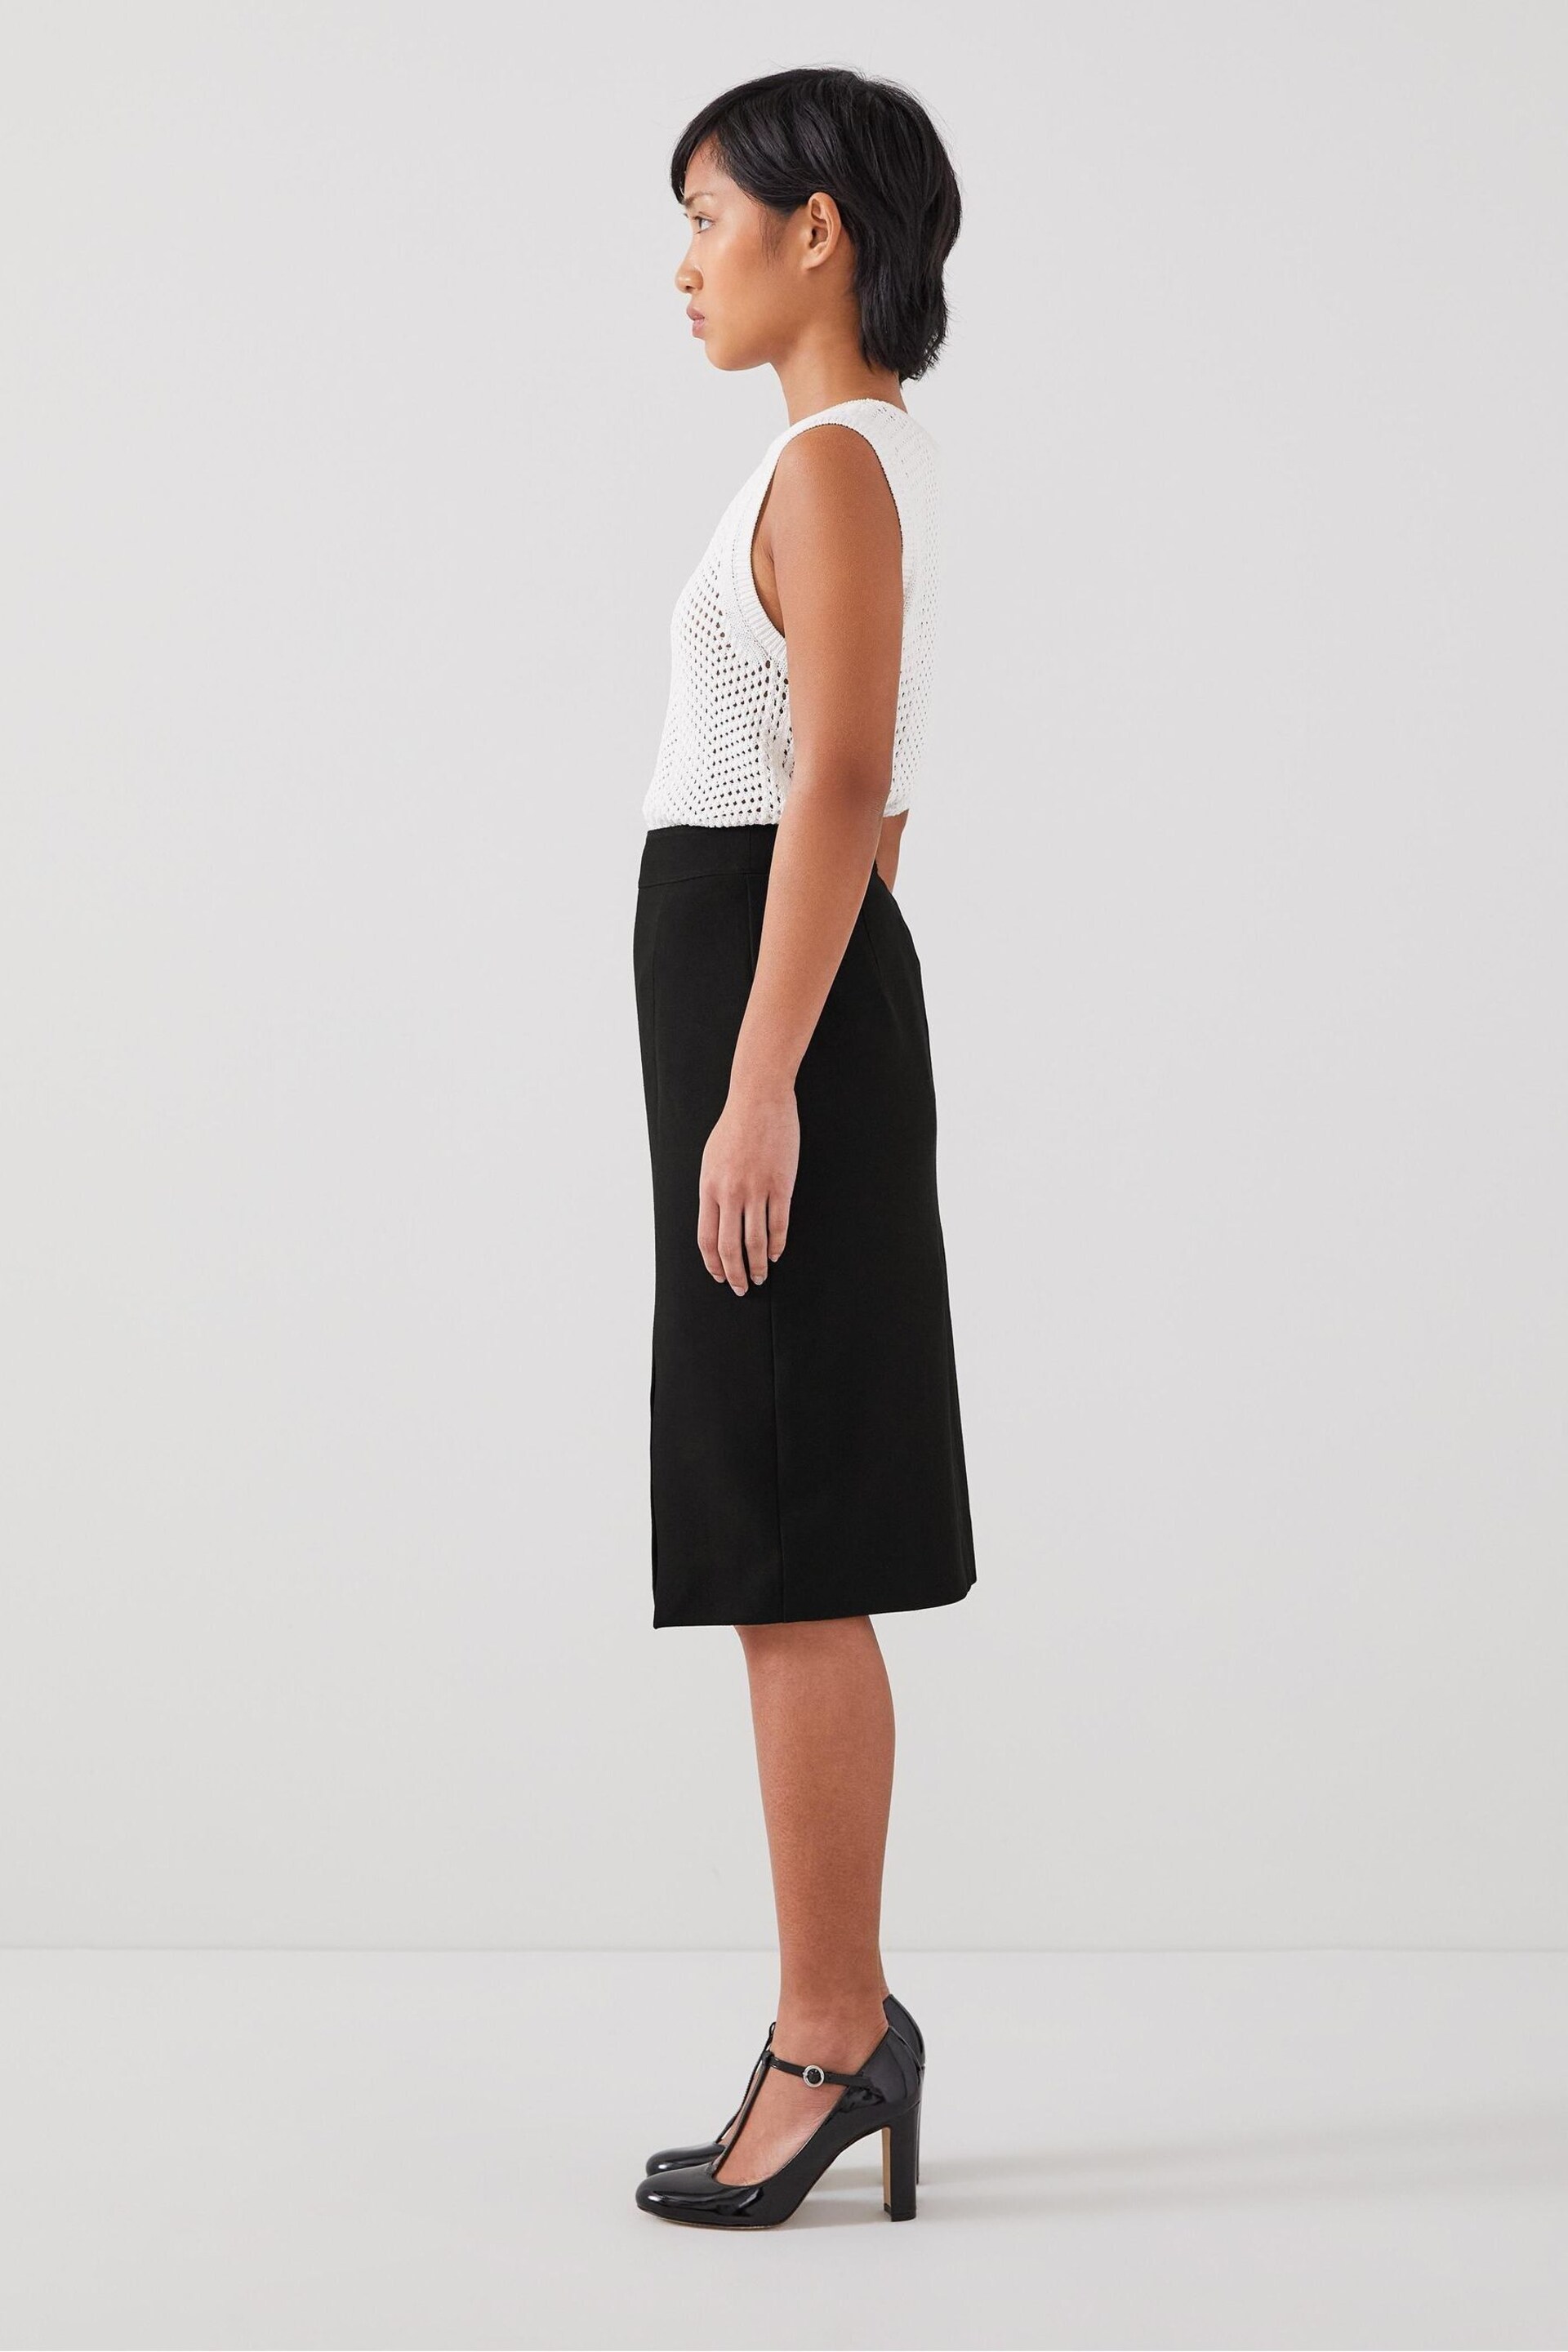 LK Bennett Sky Petite Lenzing™ Ecovero™ Viscose Blend Crepe Pencil Black Skirt - Image 2 of 3